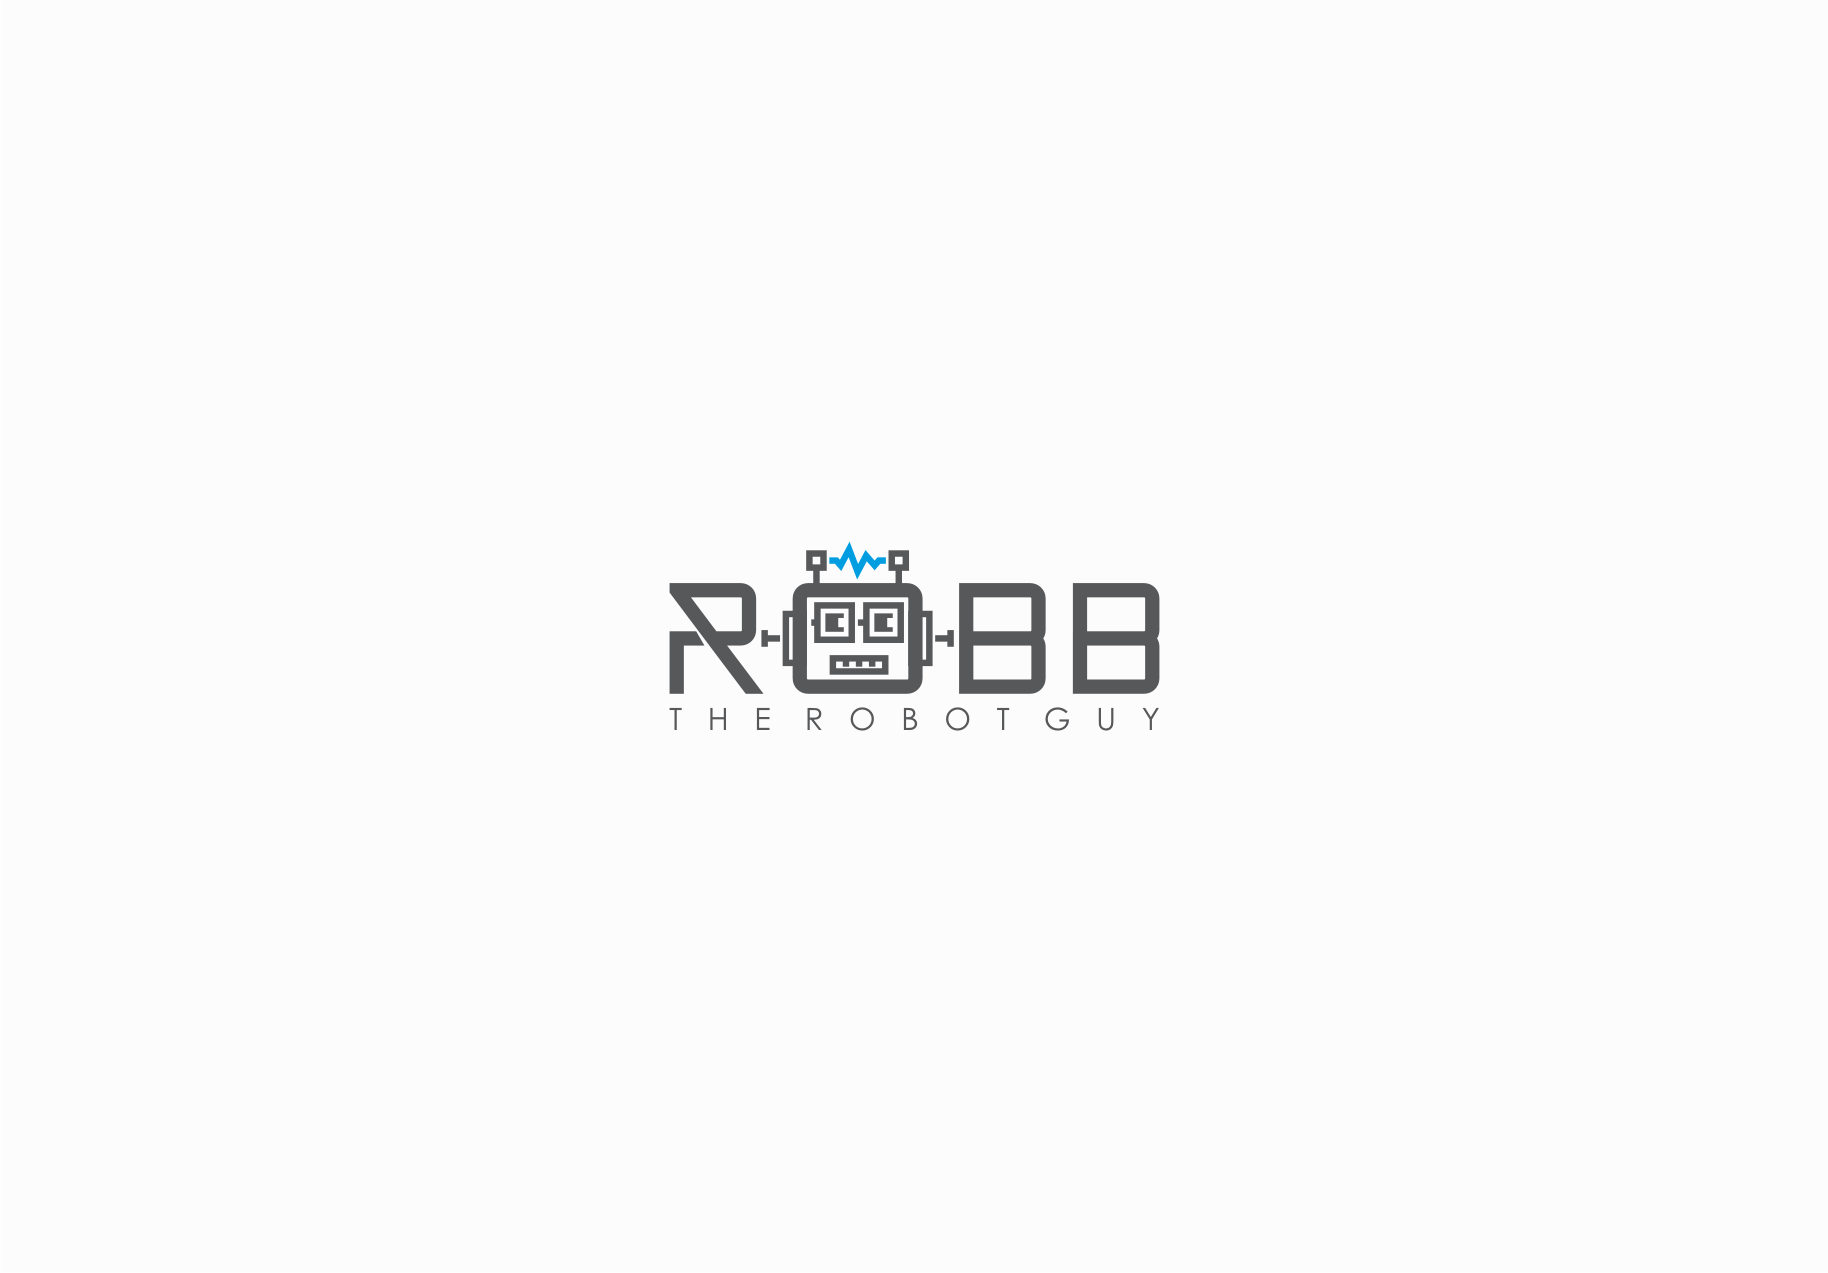 Robot Guy Logo - Robb The Robot Guy Pressroom on PRLog (robbtherobotguy)